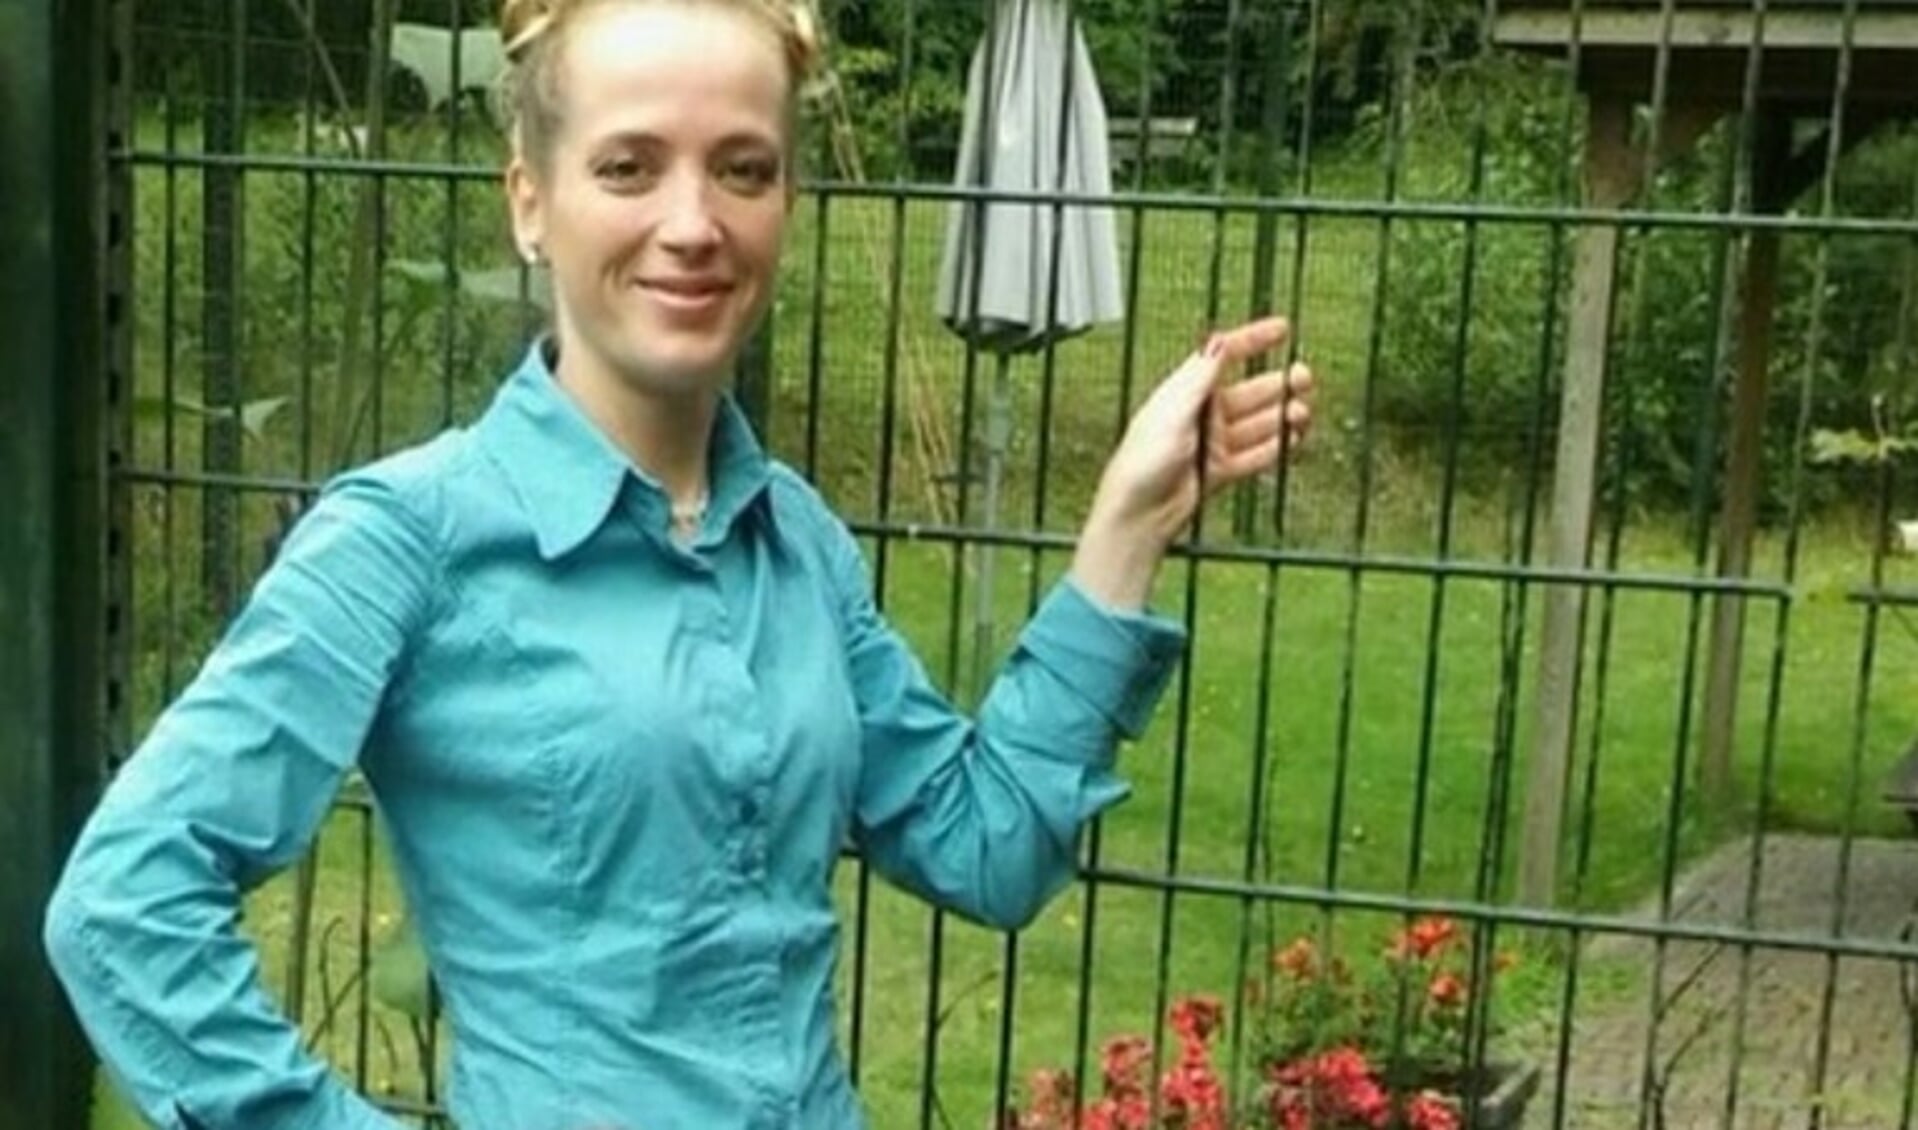 Edita Moliené (42) uit Naarden kwam in september 2018 om het leven.